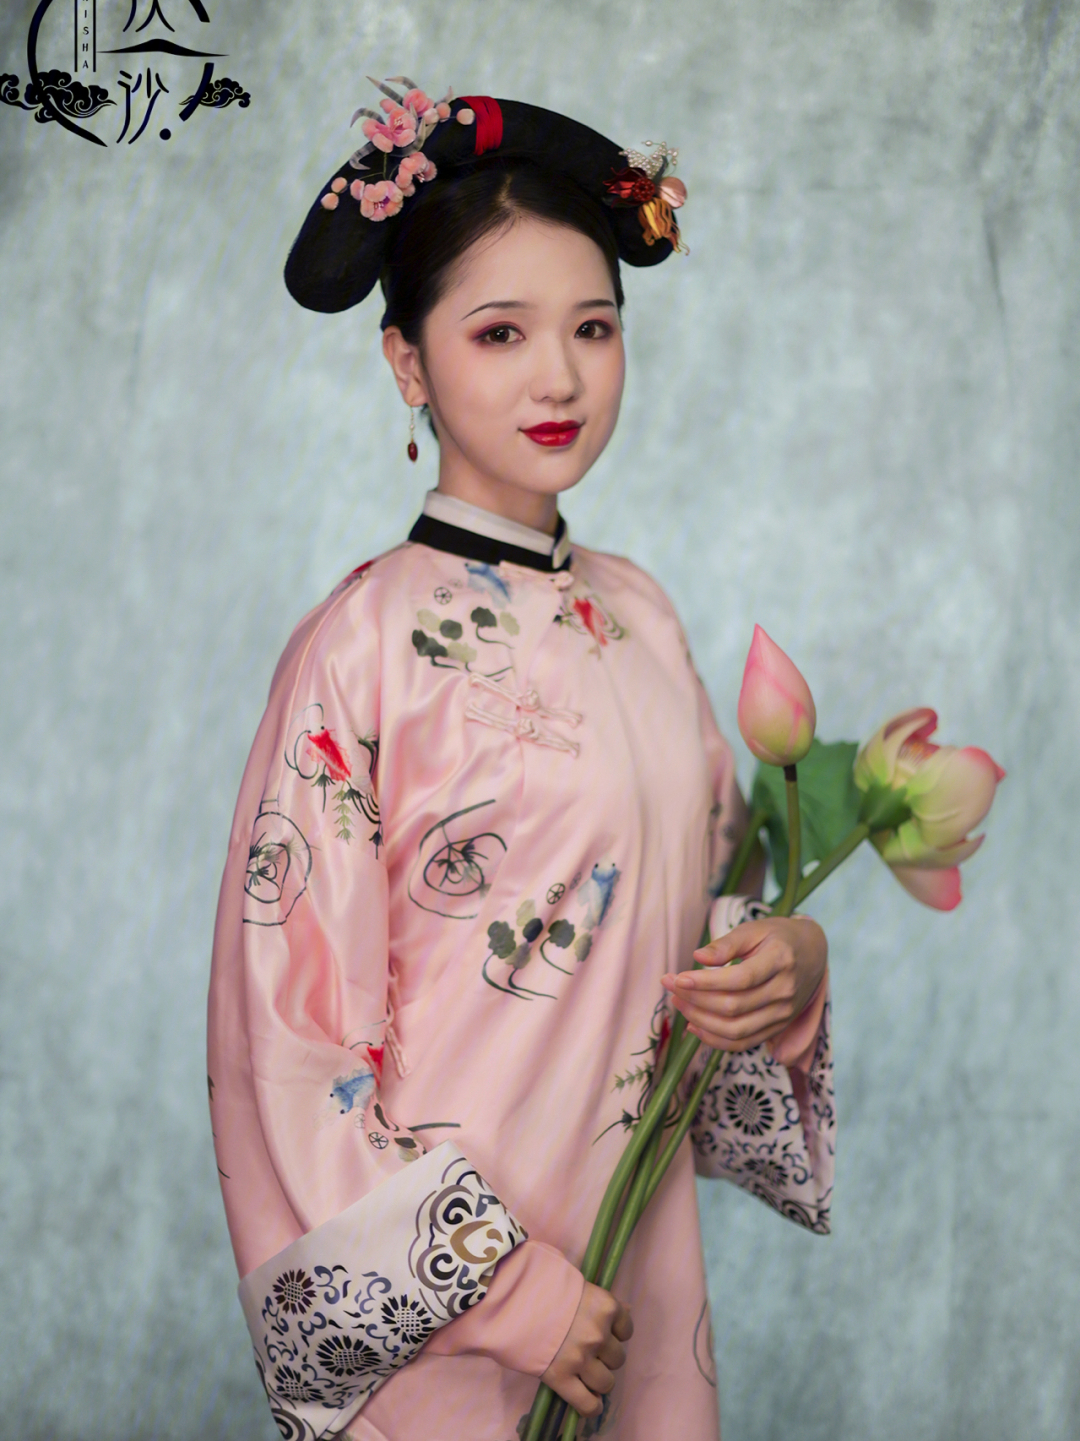 以为清朝人都是那种装扮,其实还珠格格里小燕子紫薇她们戴的是大拉翅